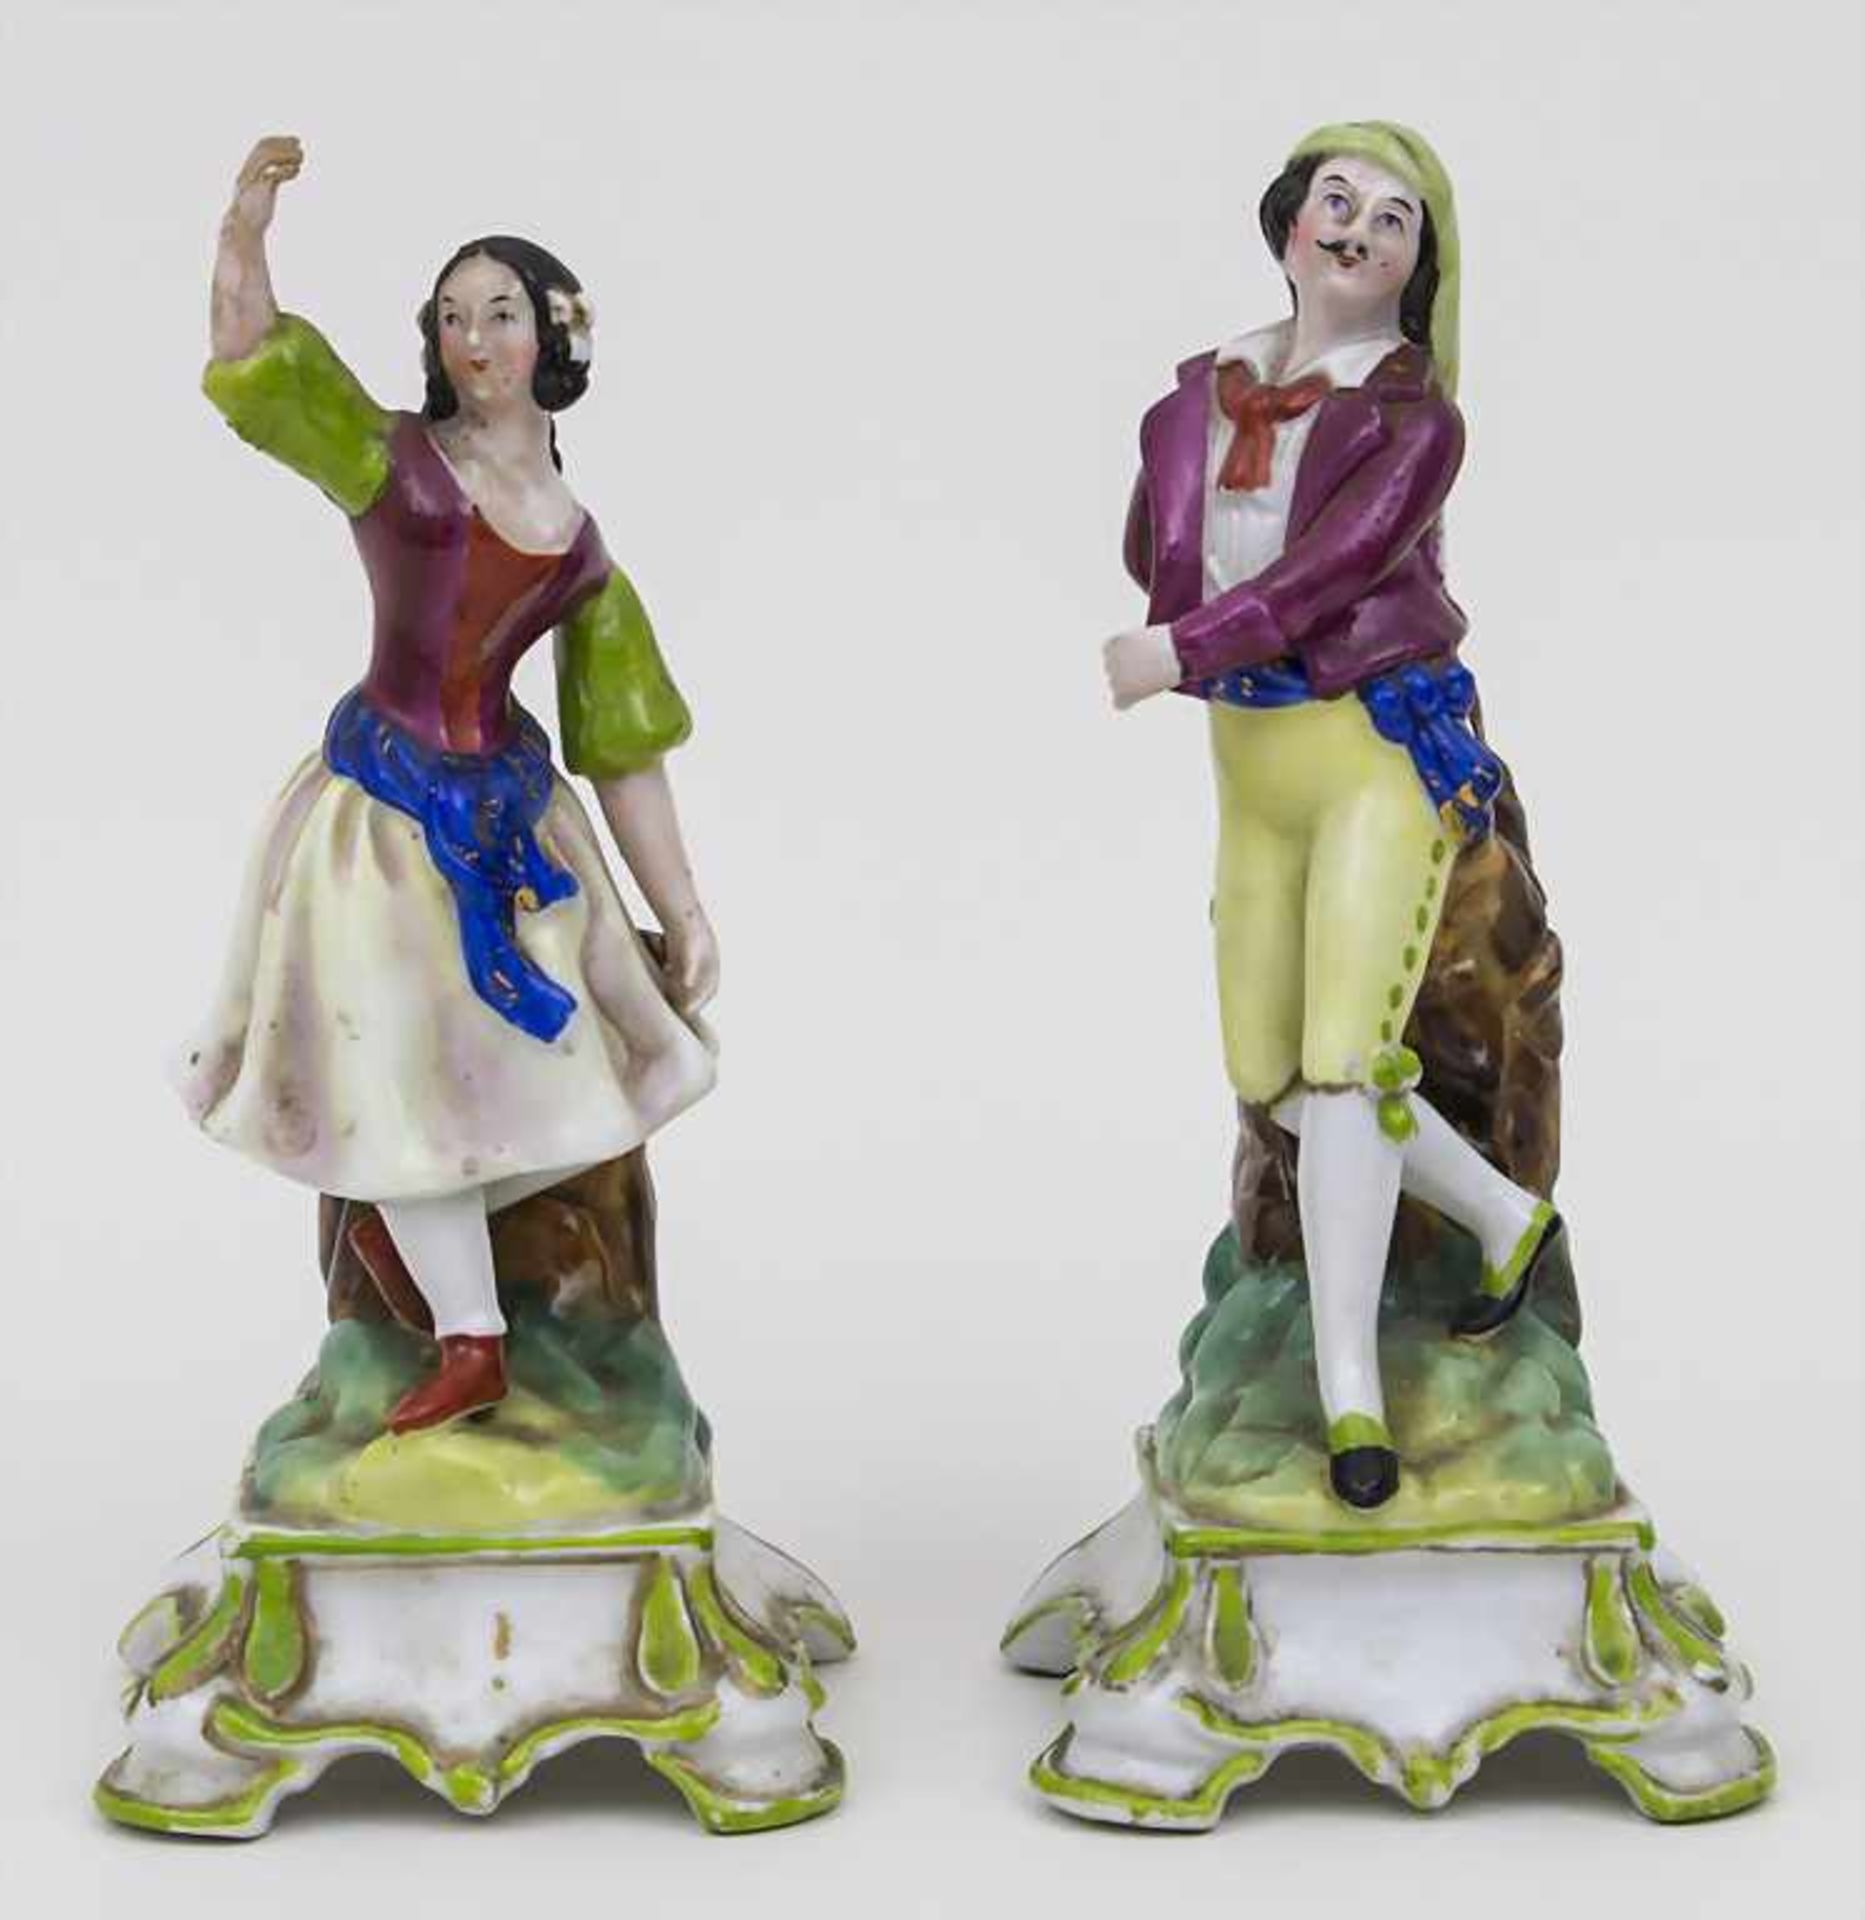 Paar Figurenvasen 'Bauerntanz' / A pair of vases 'dancing couple' Material: Porzellan, glasiert